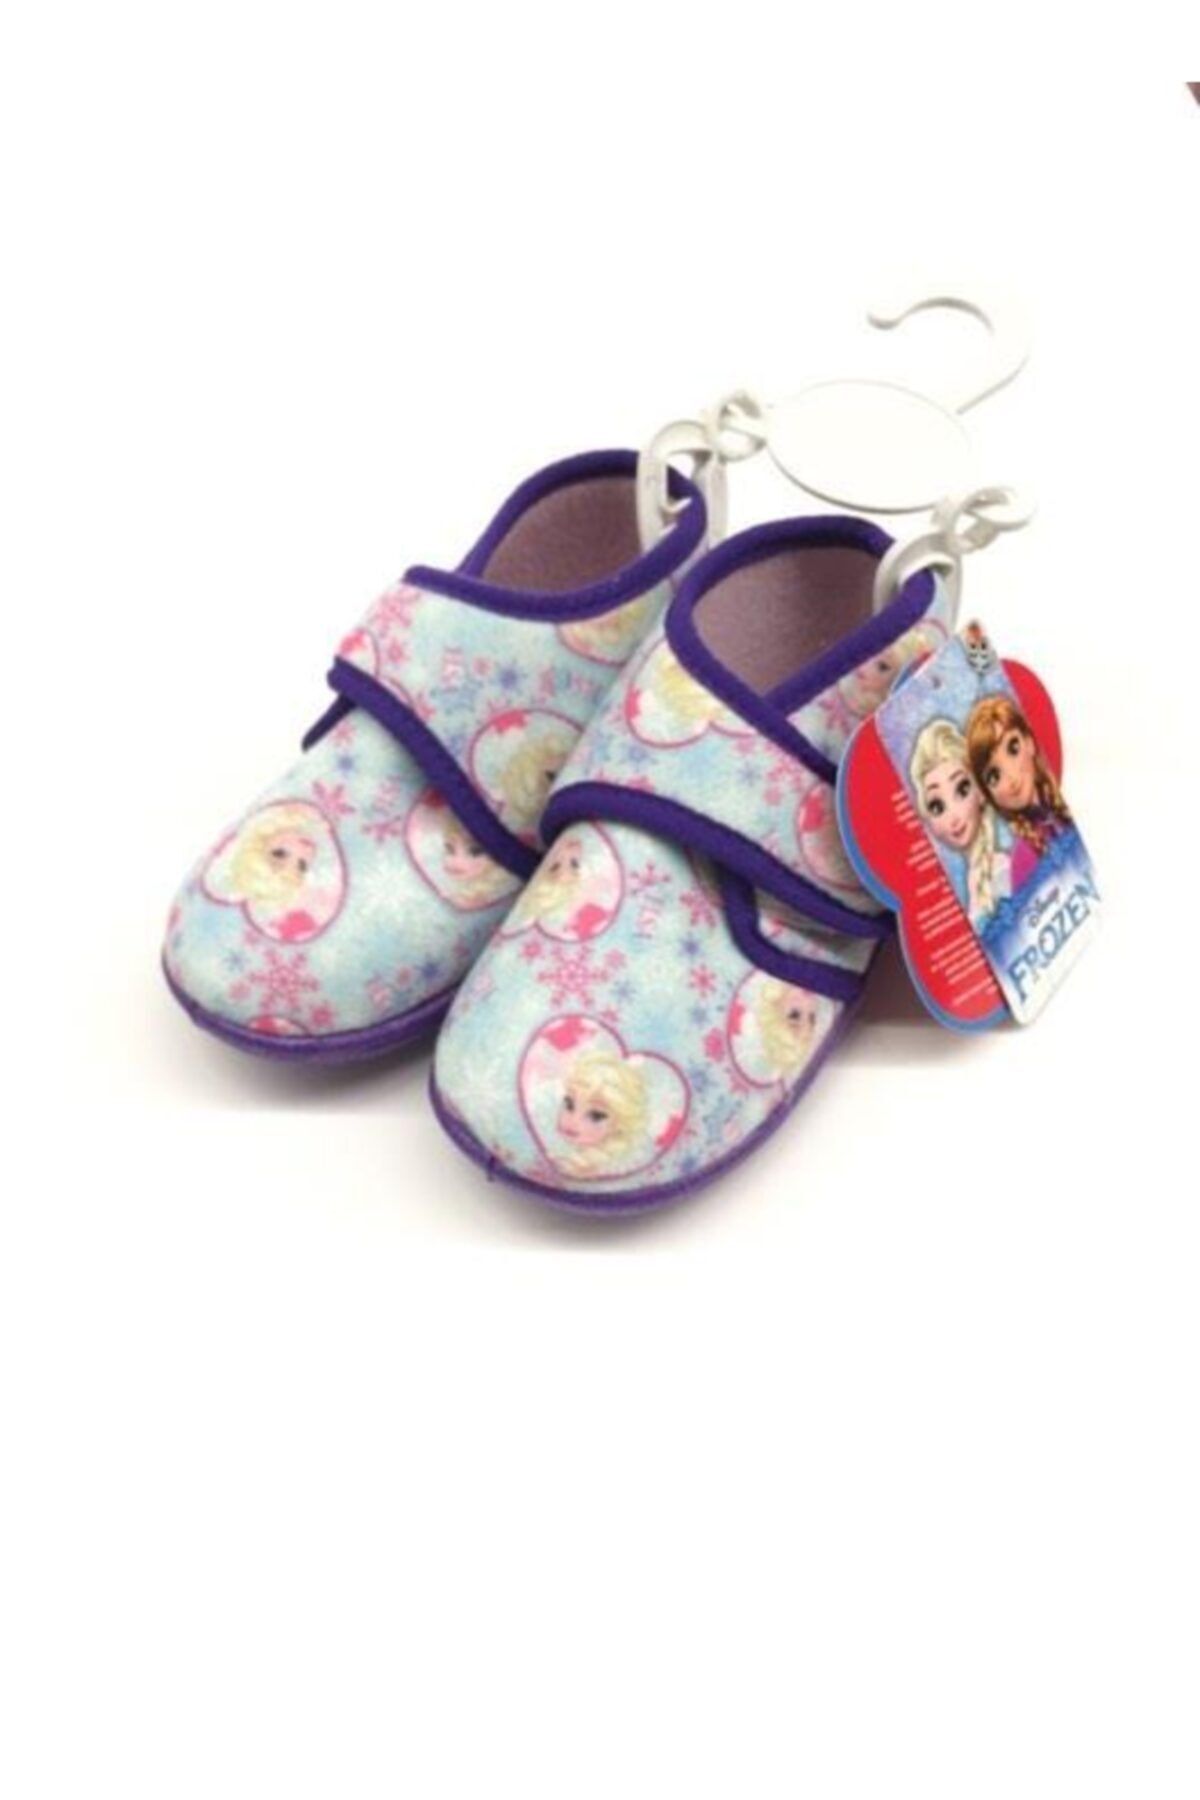 Hakan Çanta Frozen Lisanslı Panduf Çocuk Ayakkabısı 22 Numara